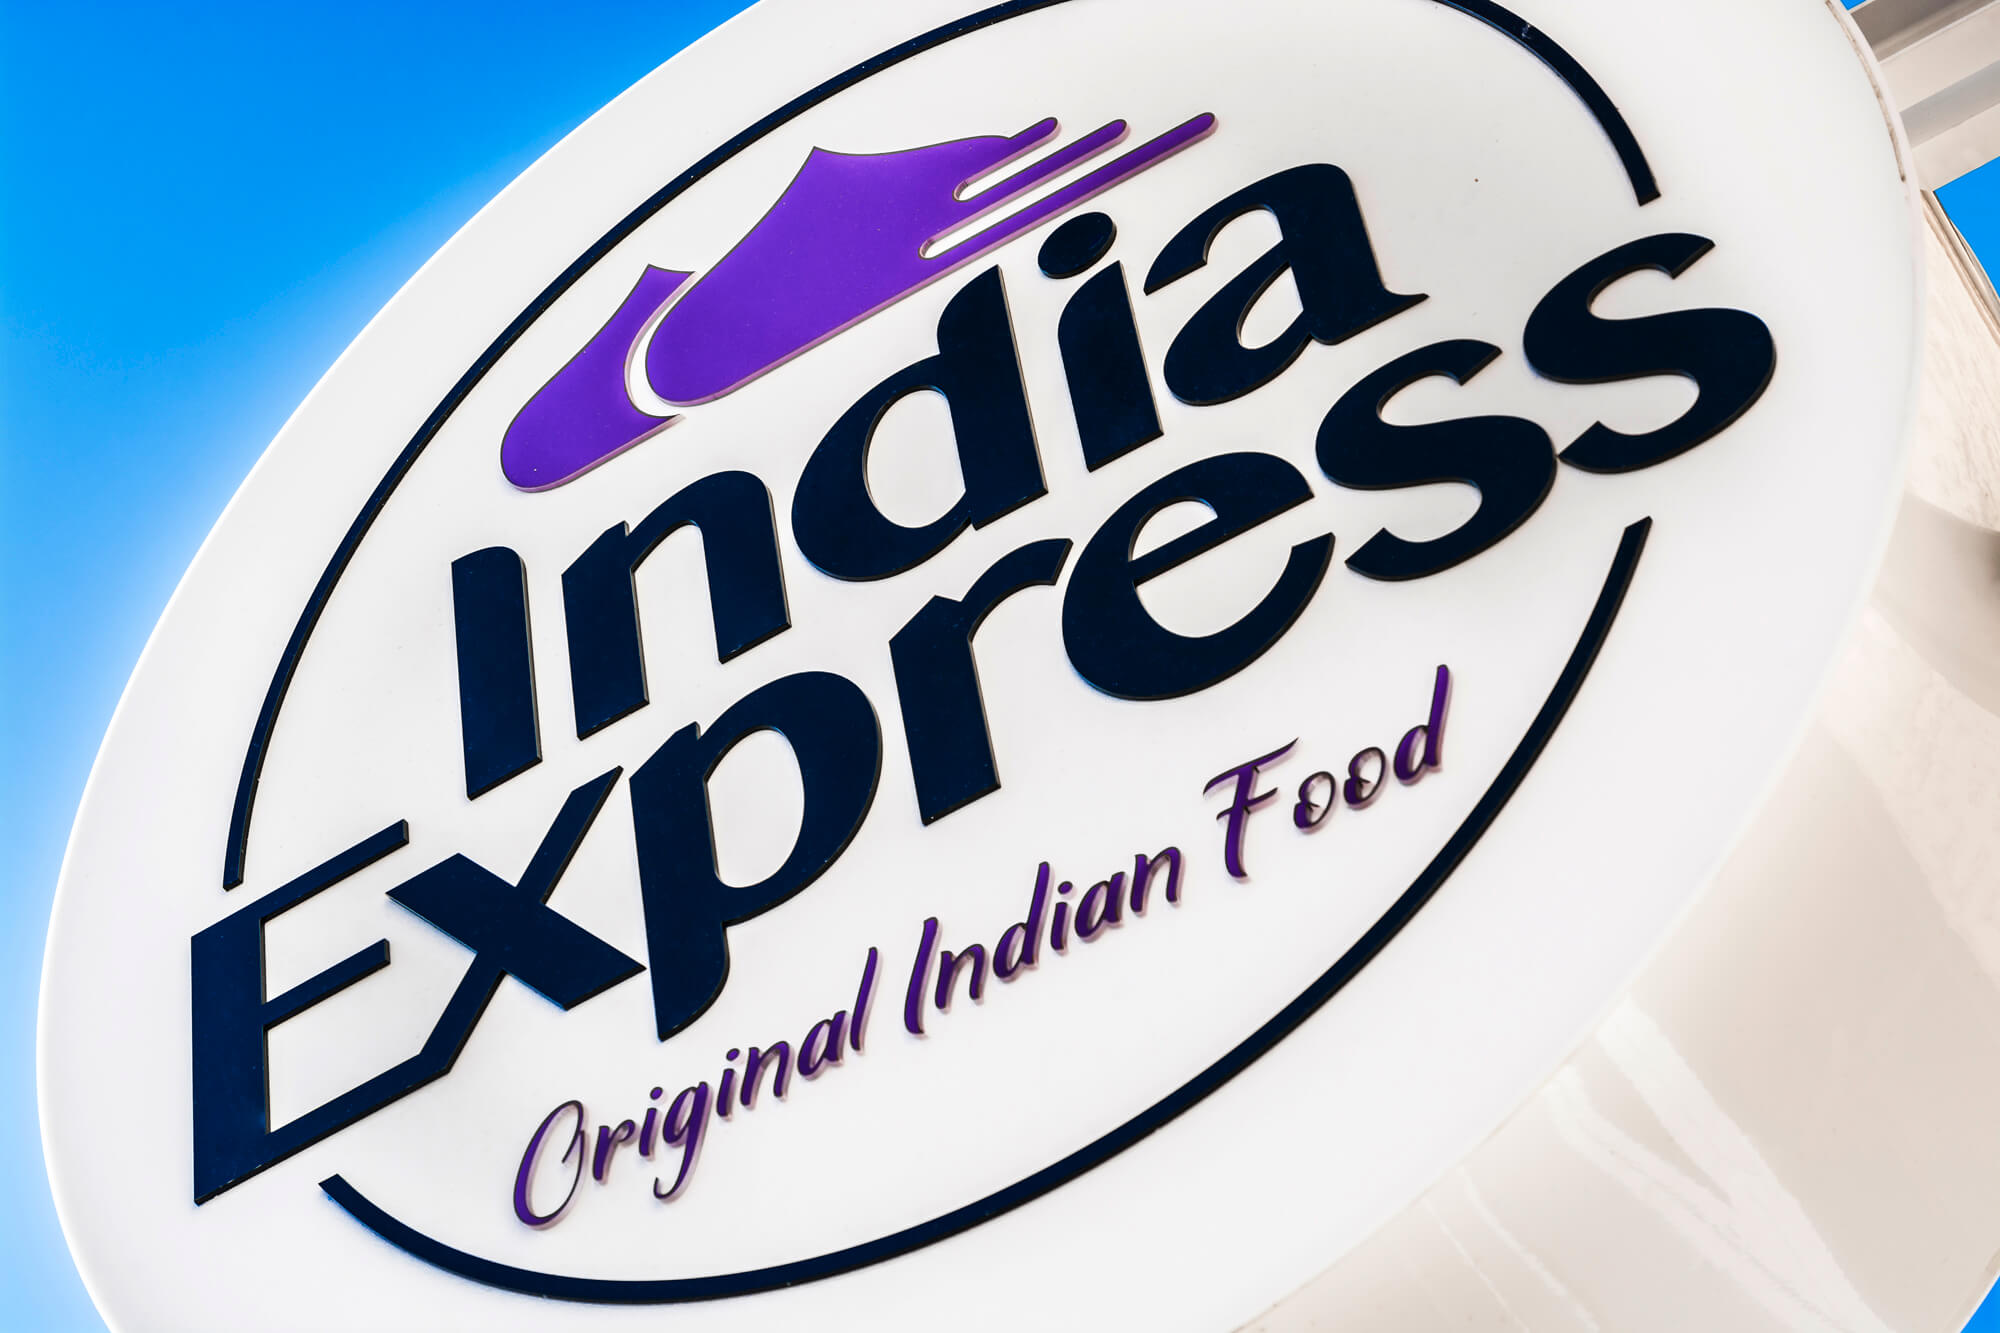 India Express - India Express - sémaphore publicitaire avec le logo de la société accroché à côté de l'entrée.